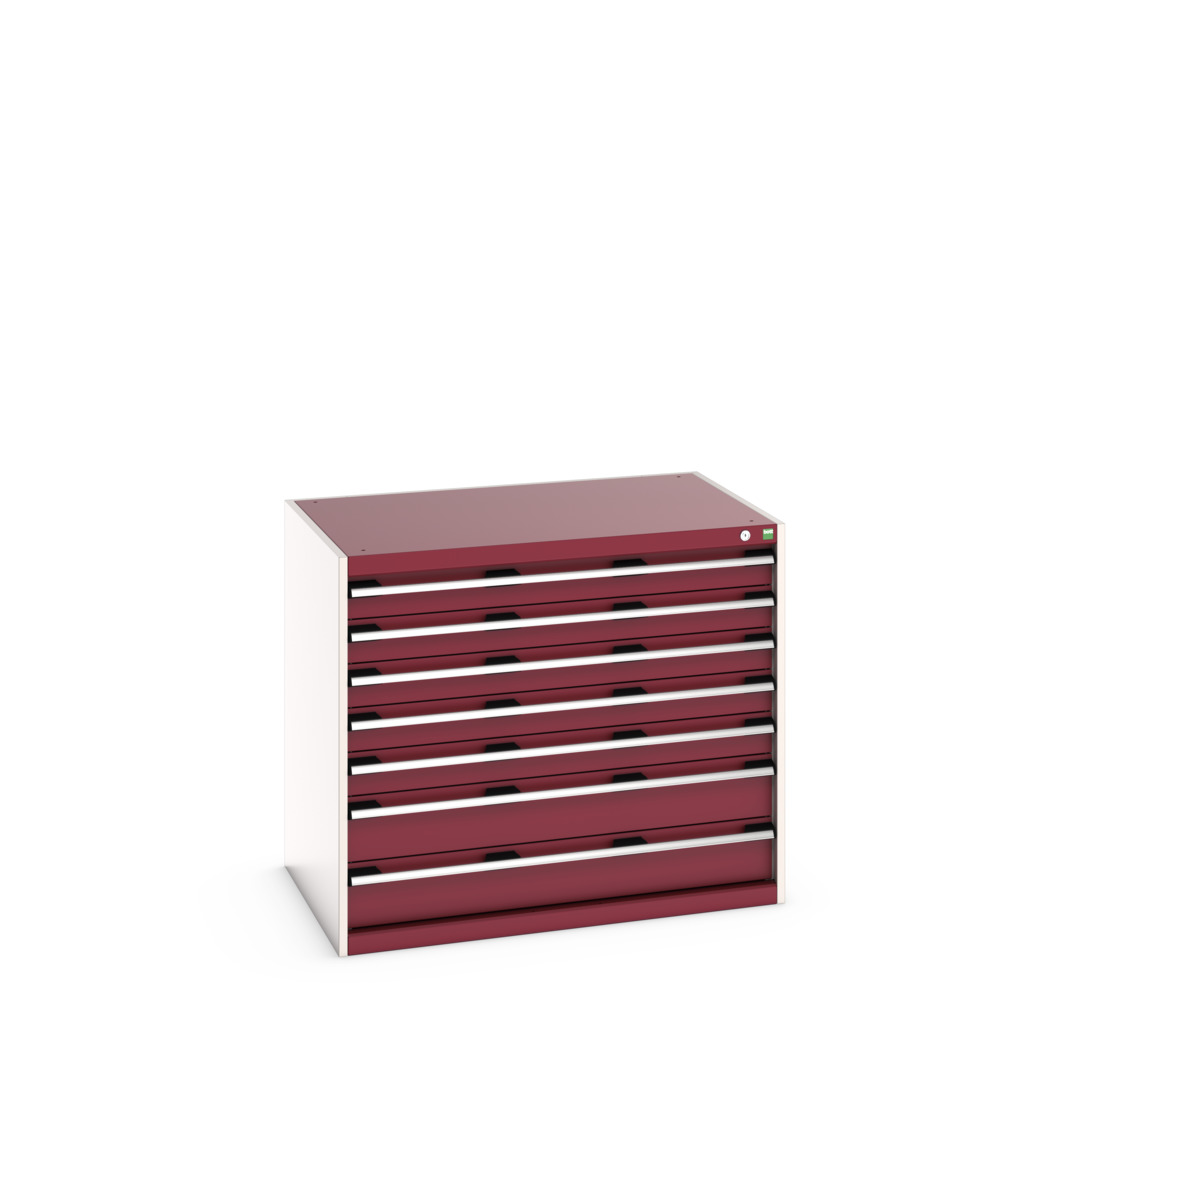 40029092.24V - cubio drawer cabinet